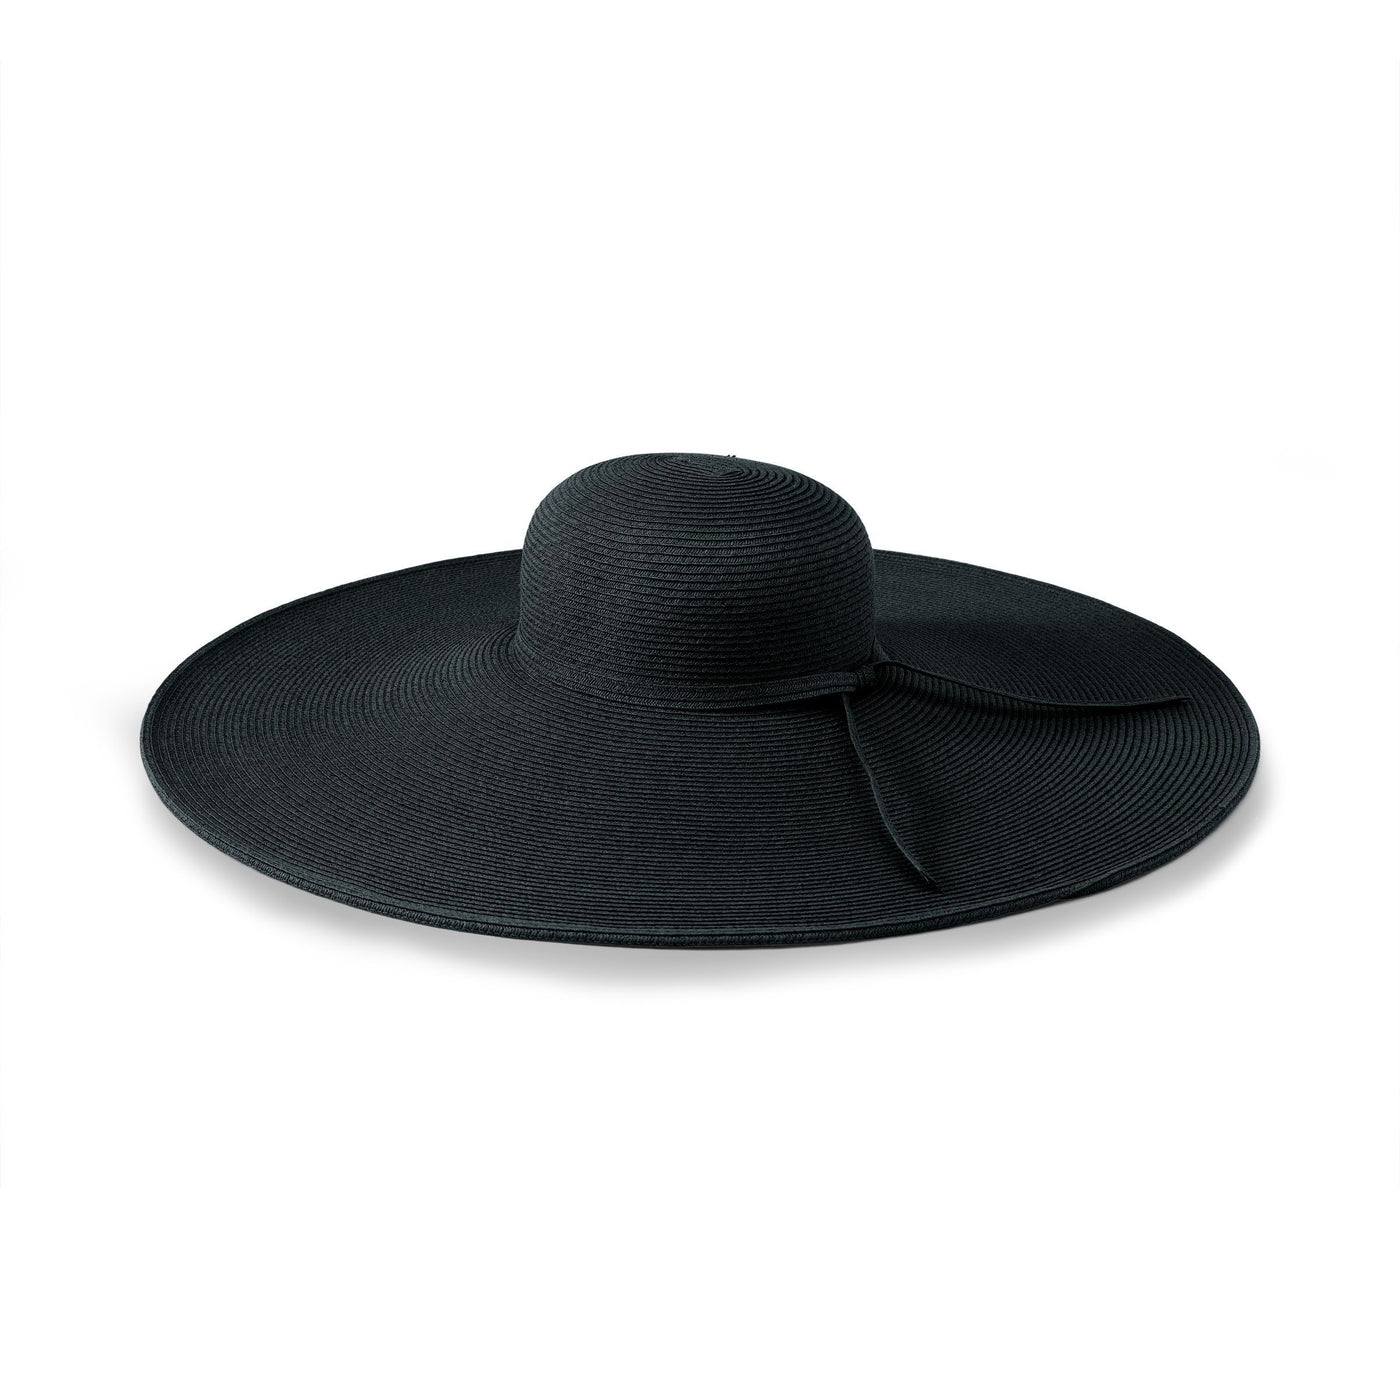 San Diego Hat Company Women's Ultrabraid XL Brim Hat UBX2535, Black